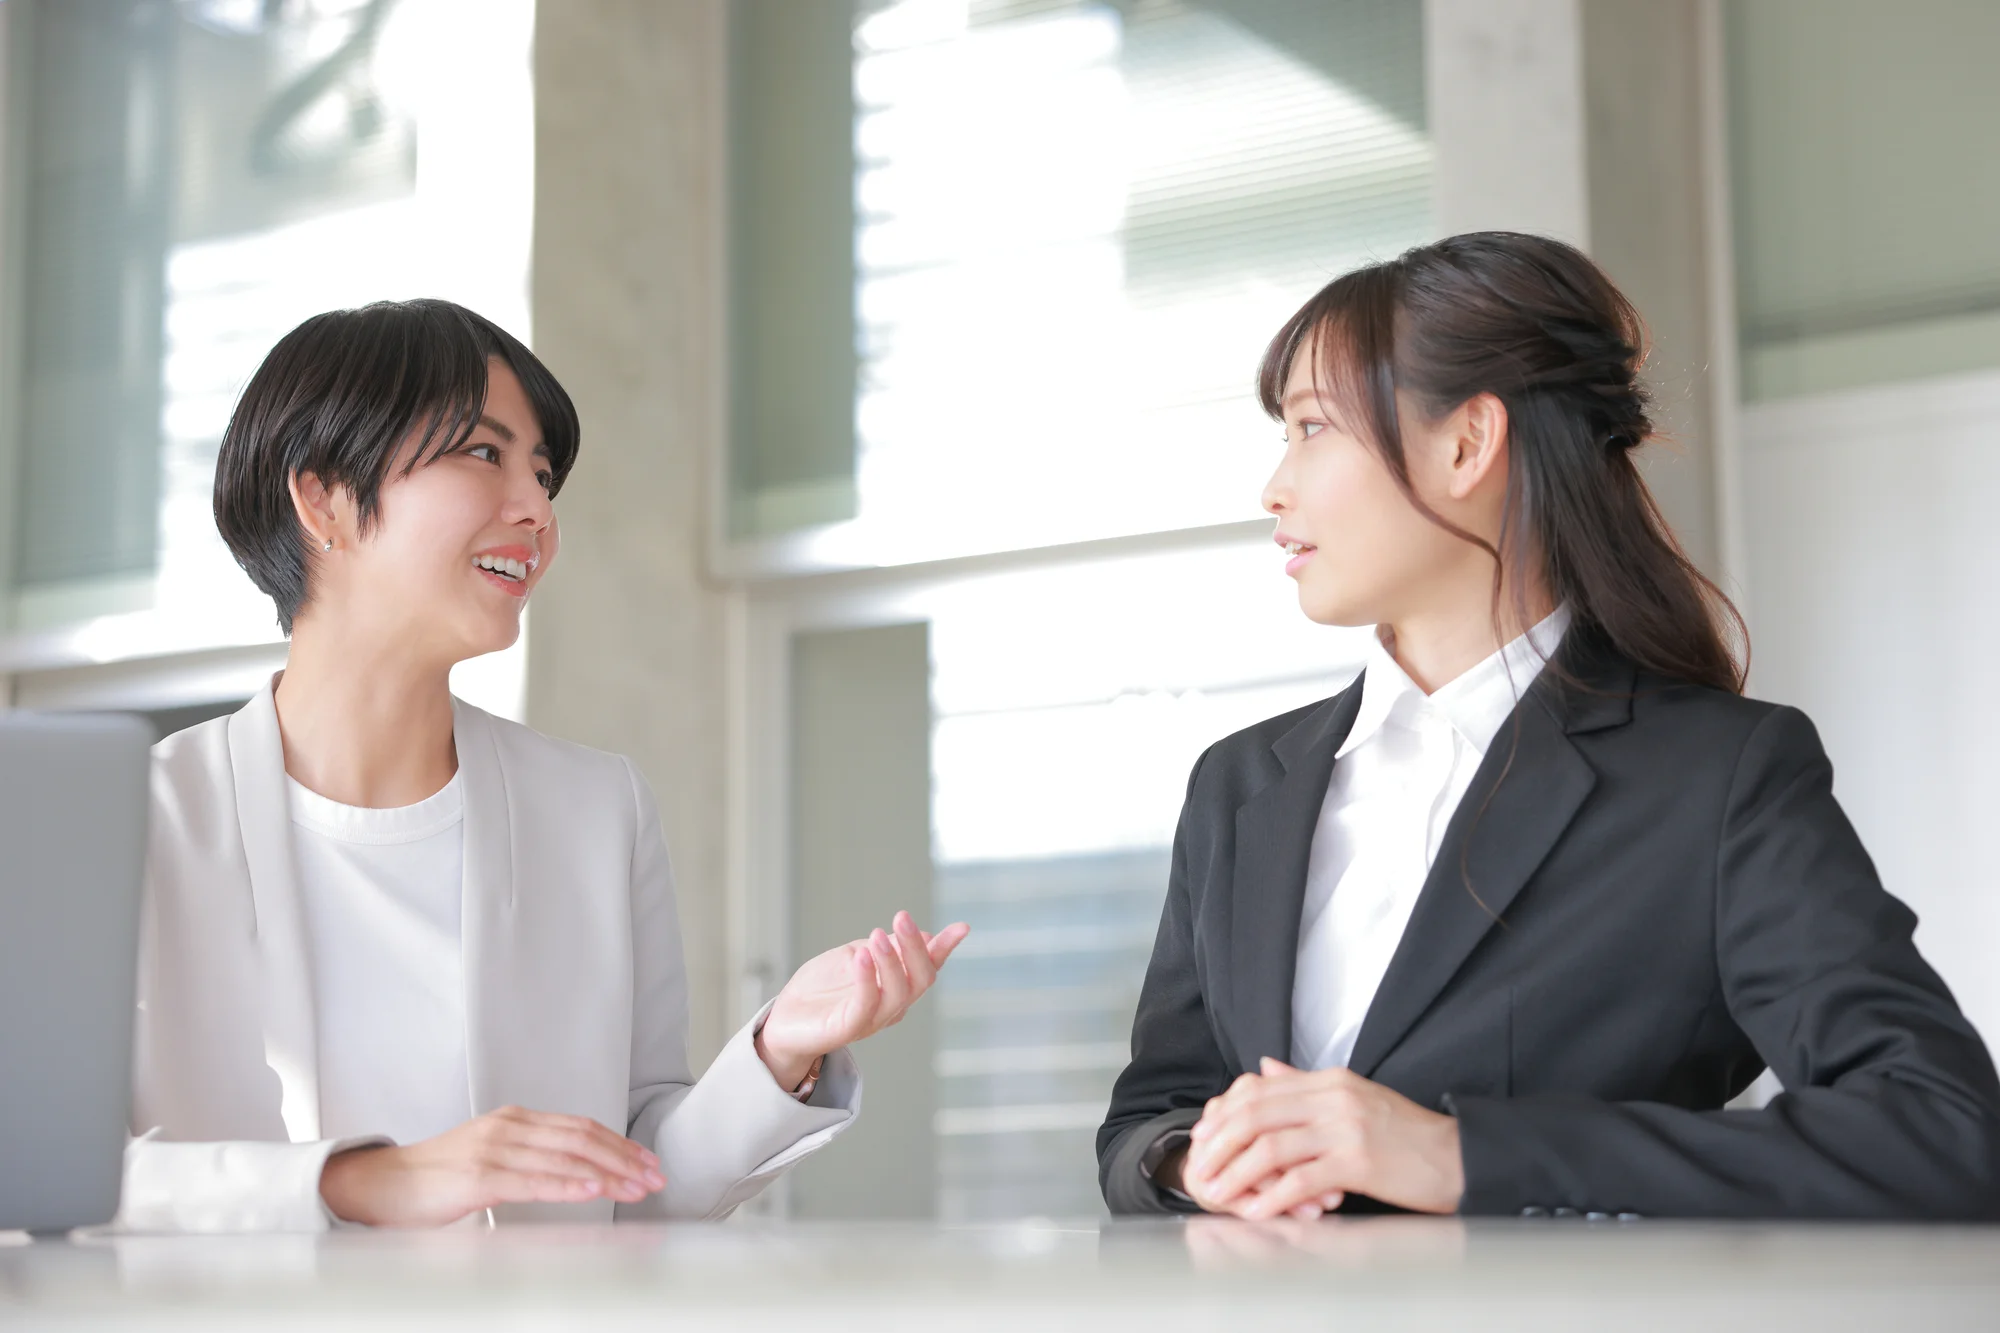 Thực tập sinh kết hôn với người Nhật cần thông qua sự đồng ý của nghiệp đoàn